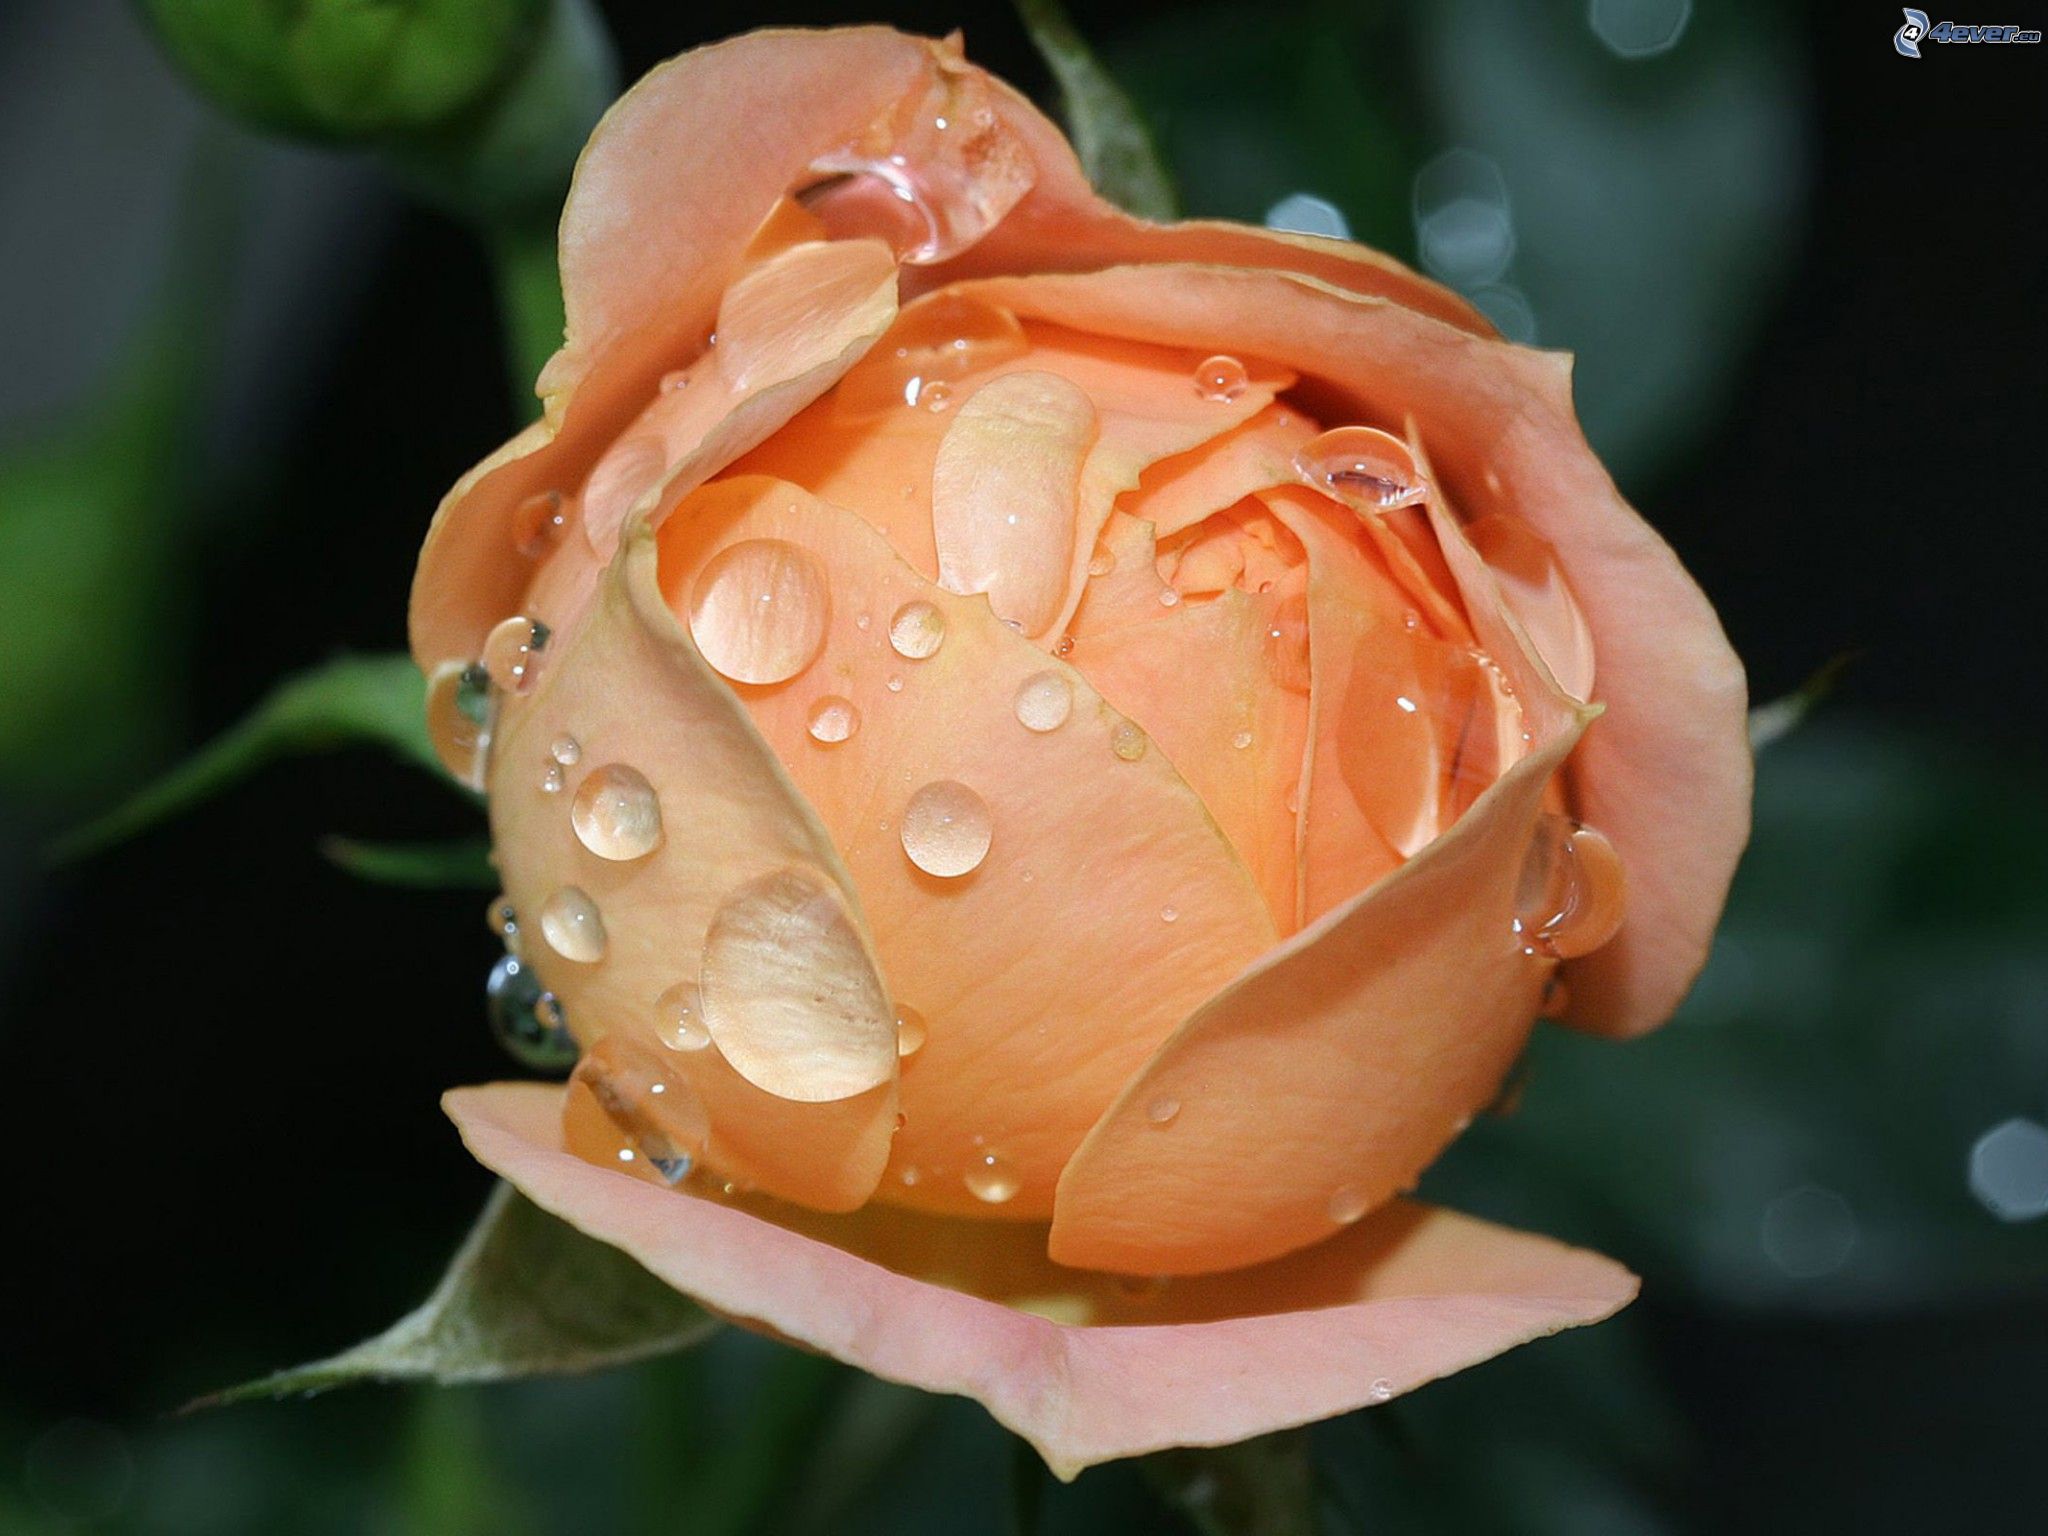 Rosa arancione